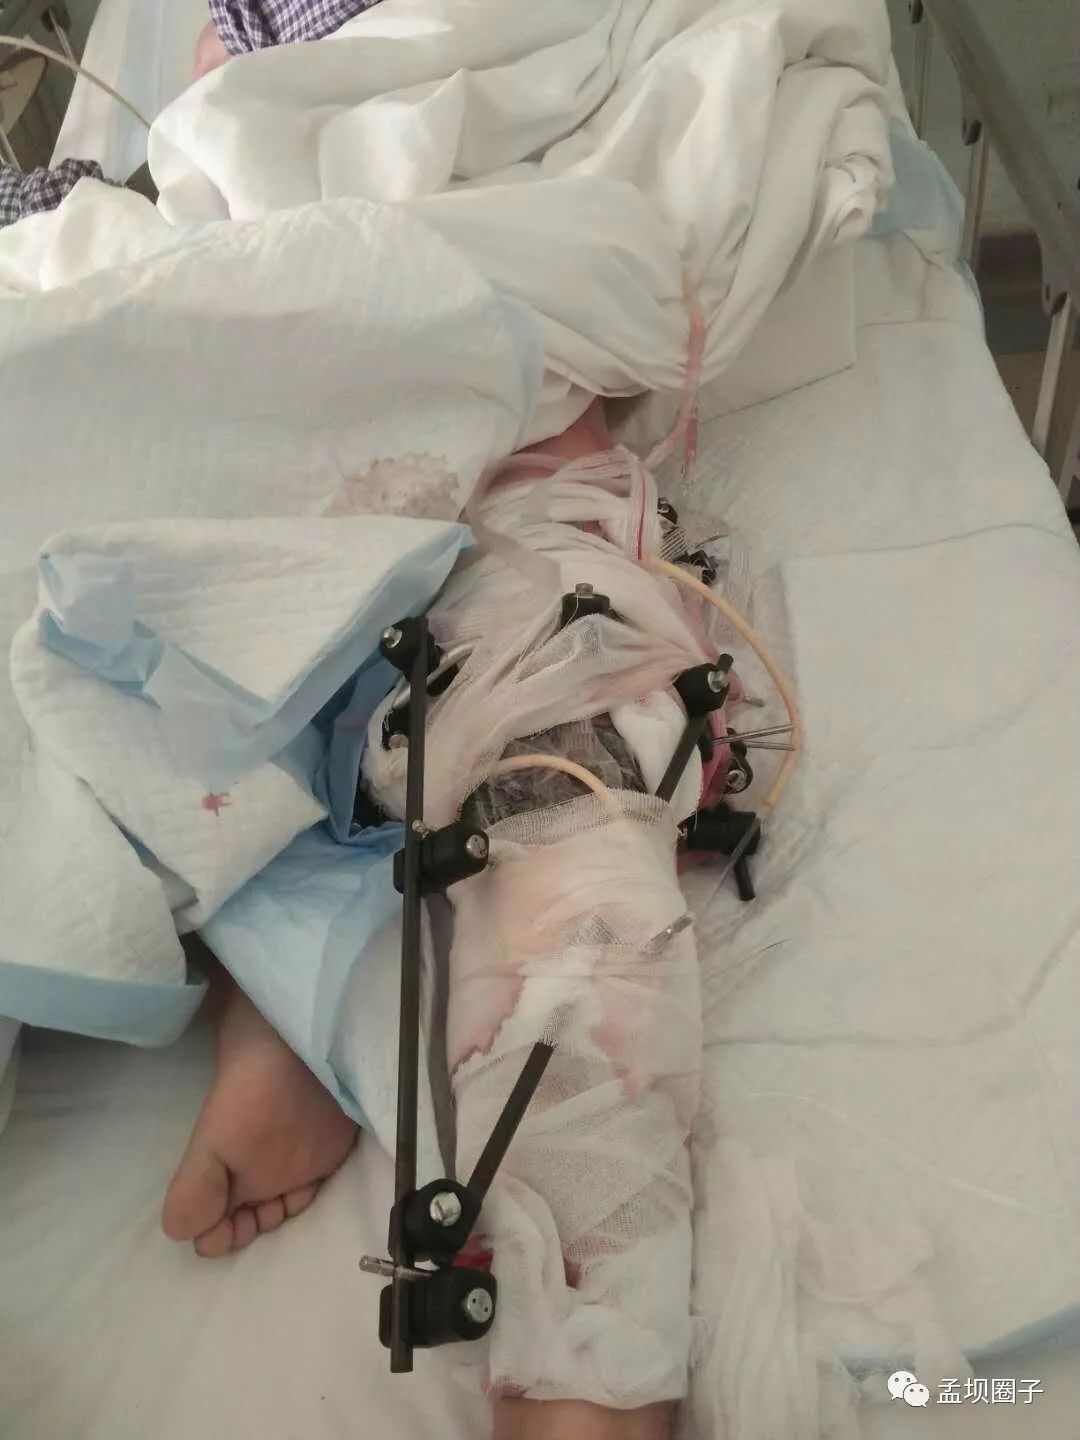 孟坝11月26日车祸,受伤者左腿粉碎性骨折最新情况!